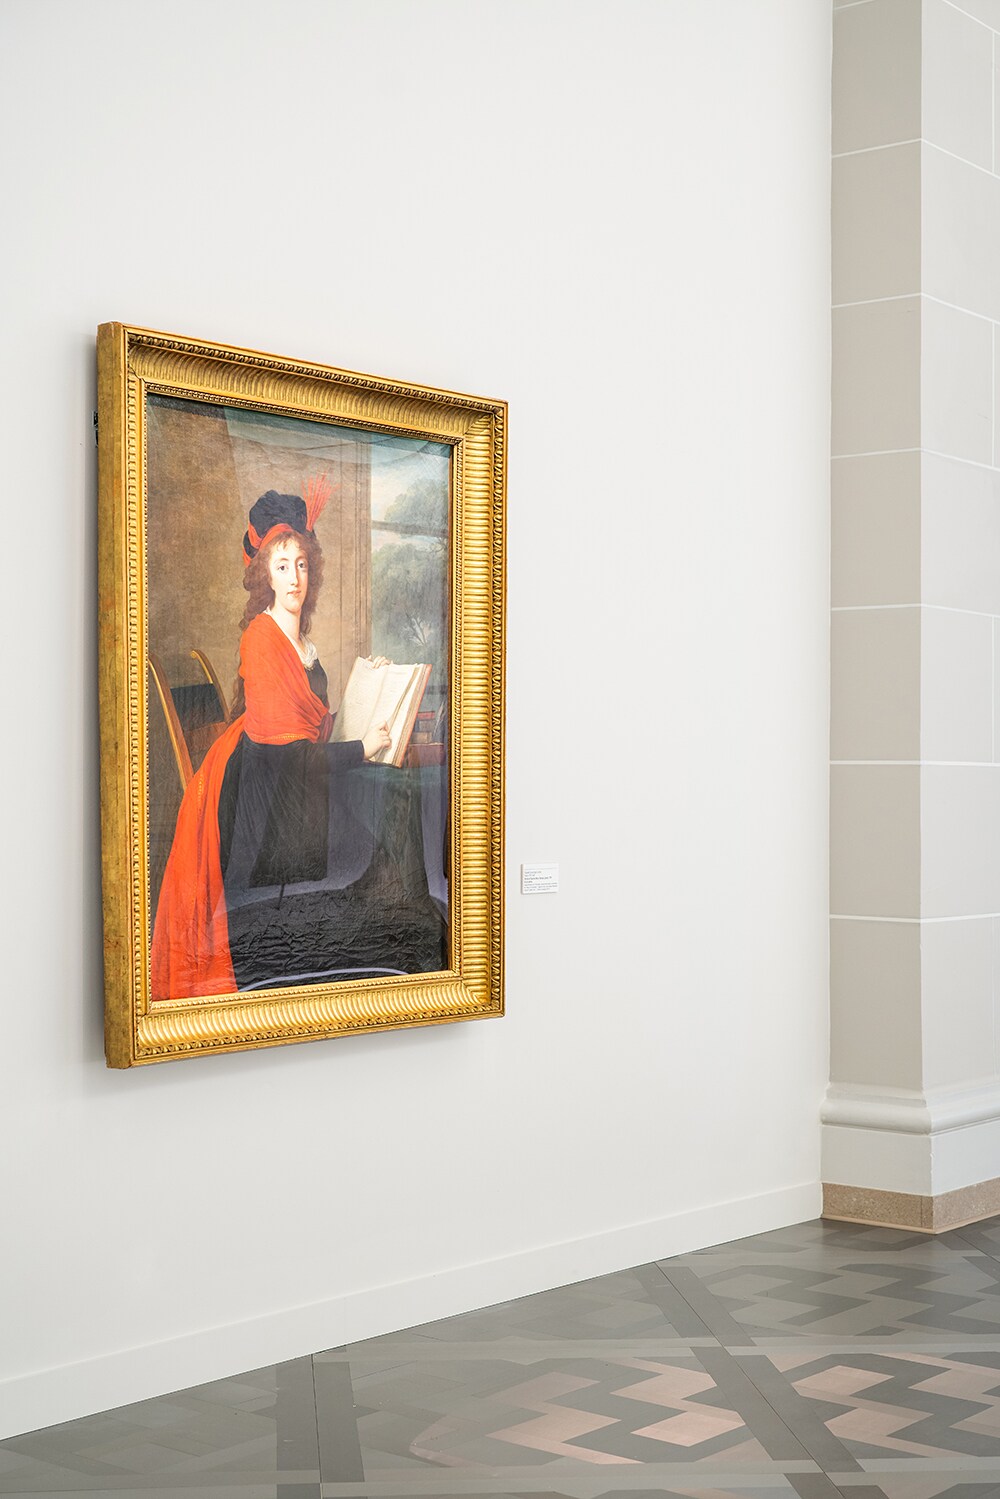 インスピレーションを受けたというロココ時代の画家、エリザベート＝ルイーズ・ヴィジェ＝ルブランの作品。《マリア・テレジア・チェルニン伯爵夫人の肖像》1793年(ブルックリン美術館所蔵)。